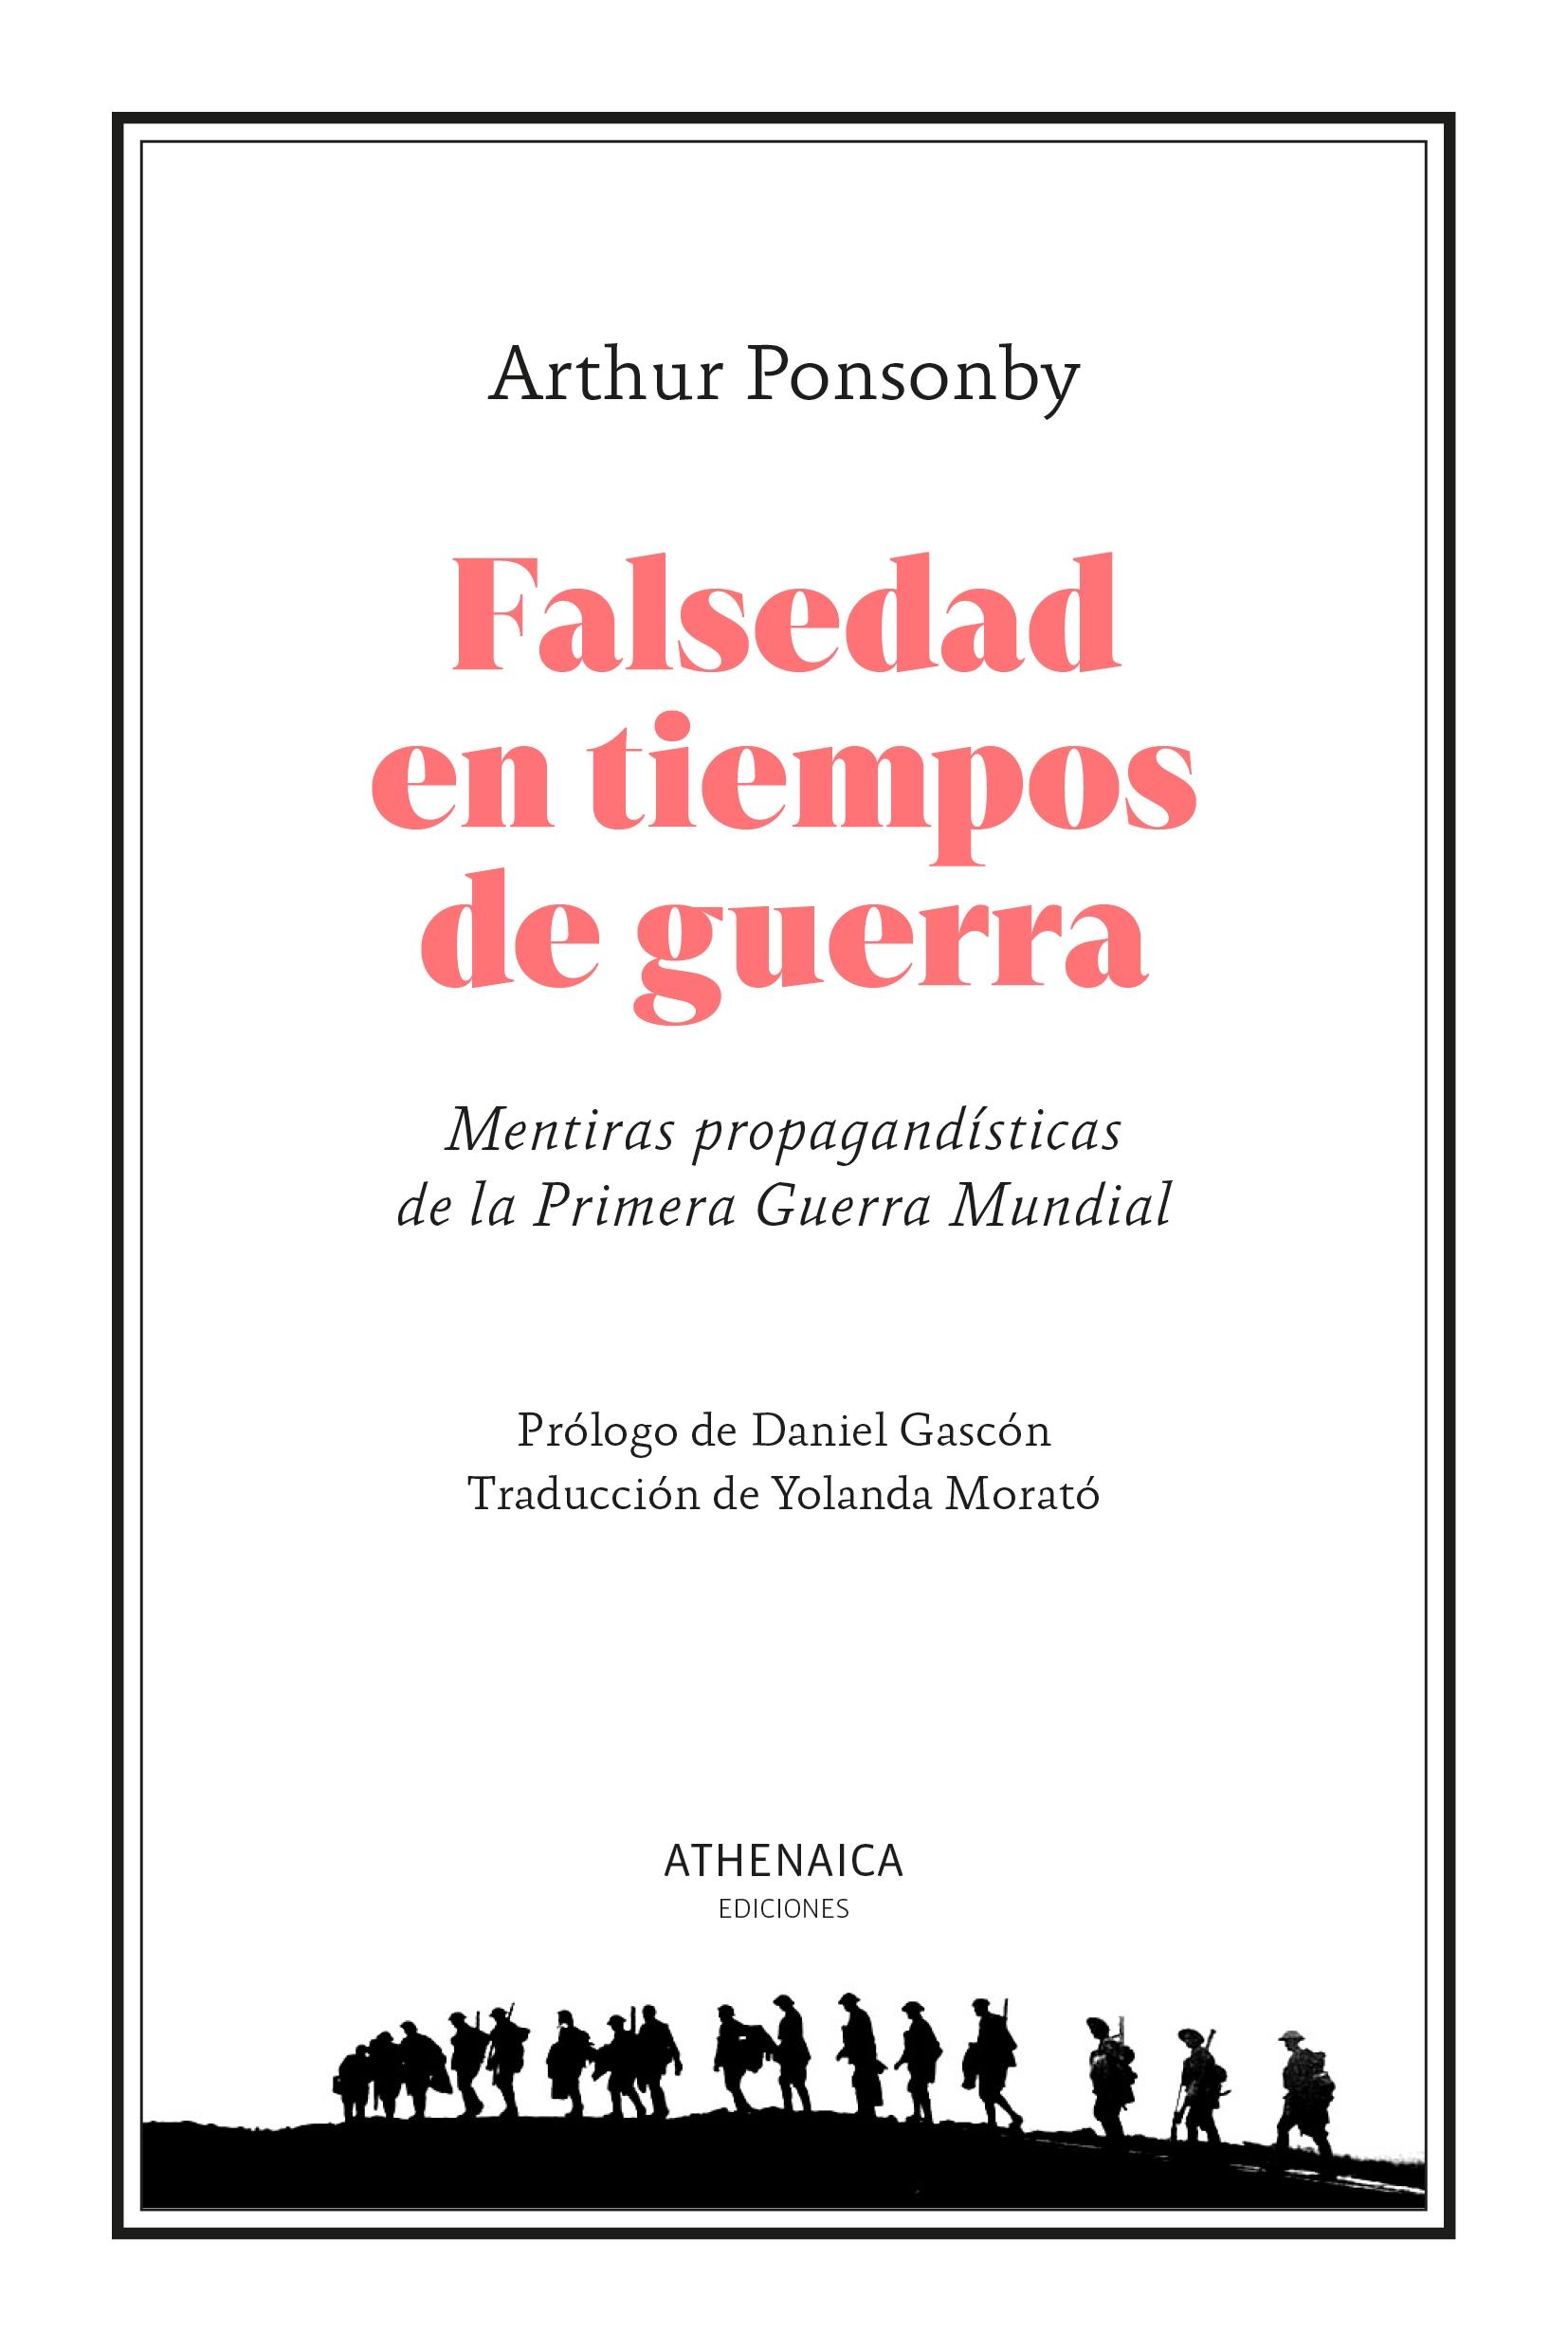 FALSEDAD EN TIEMPOS DE GUERRA "MENTIRAS PROPAGANDISTICAS DE LA PRIMERA GUERRA MUNDIAL"